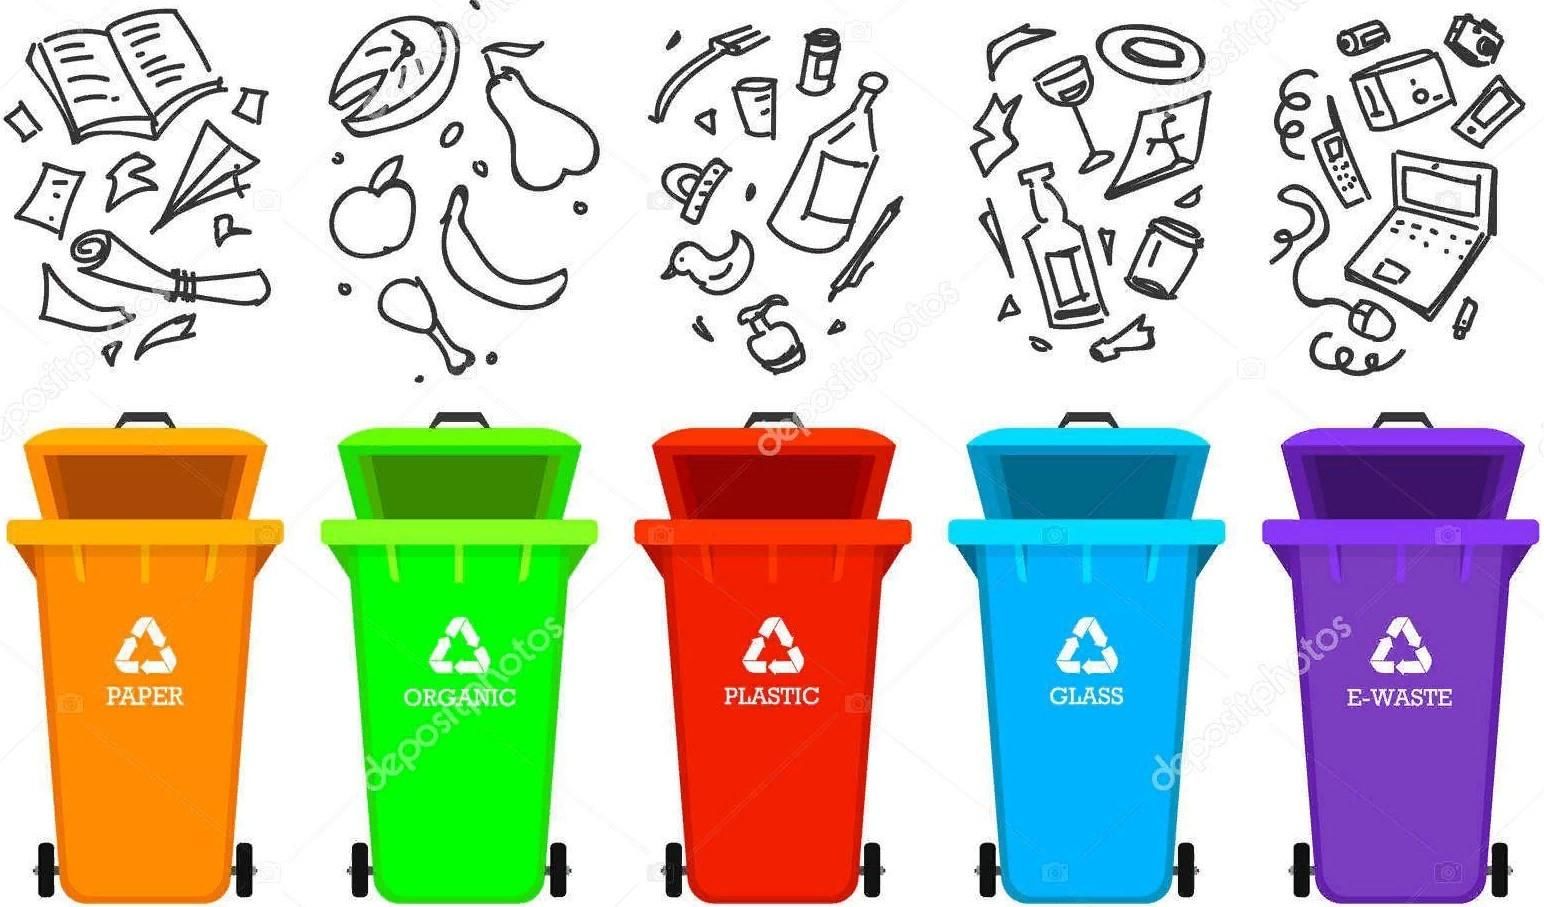 Таблички для сортировки мусора для детей